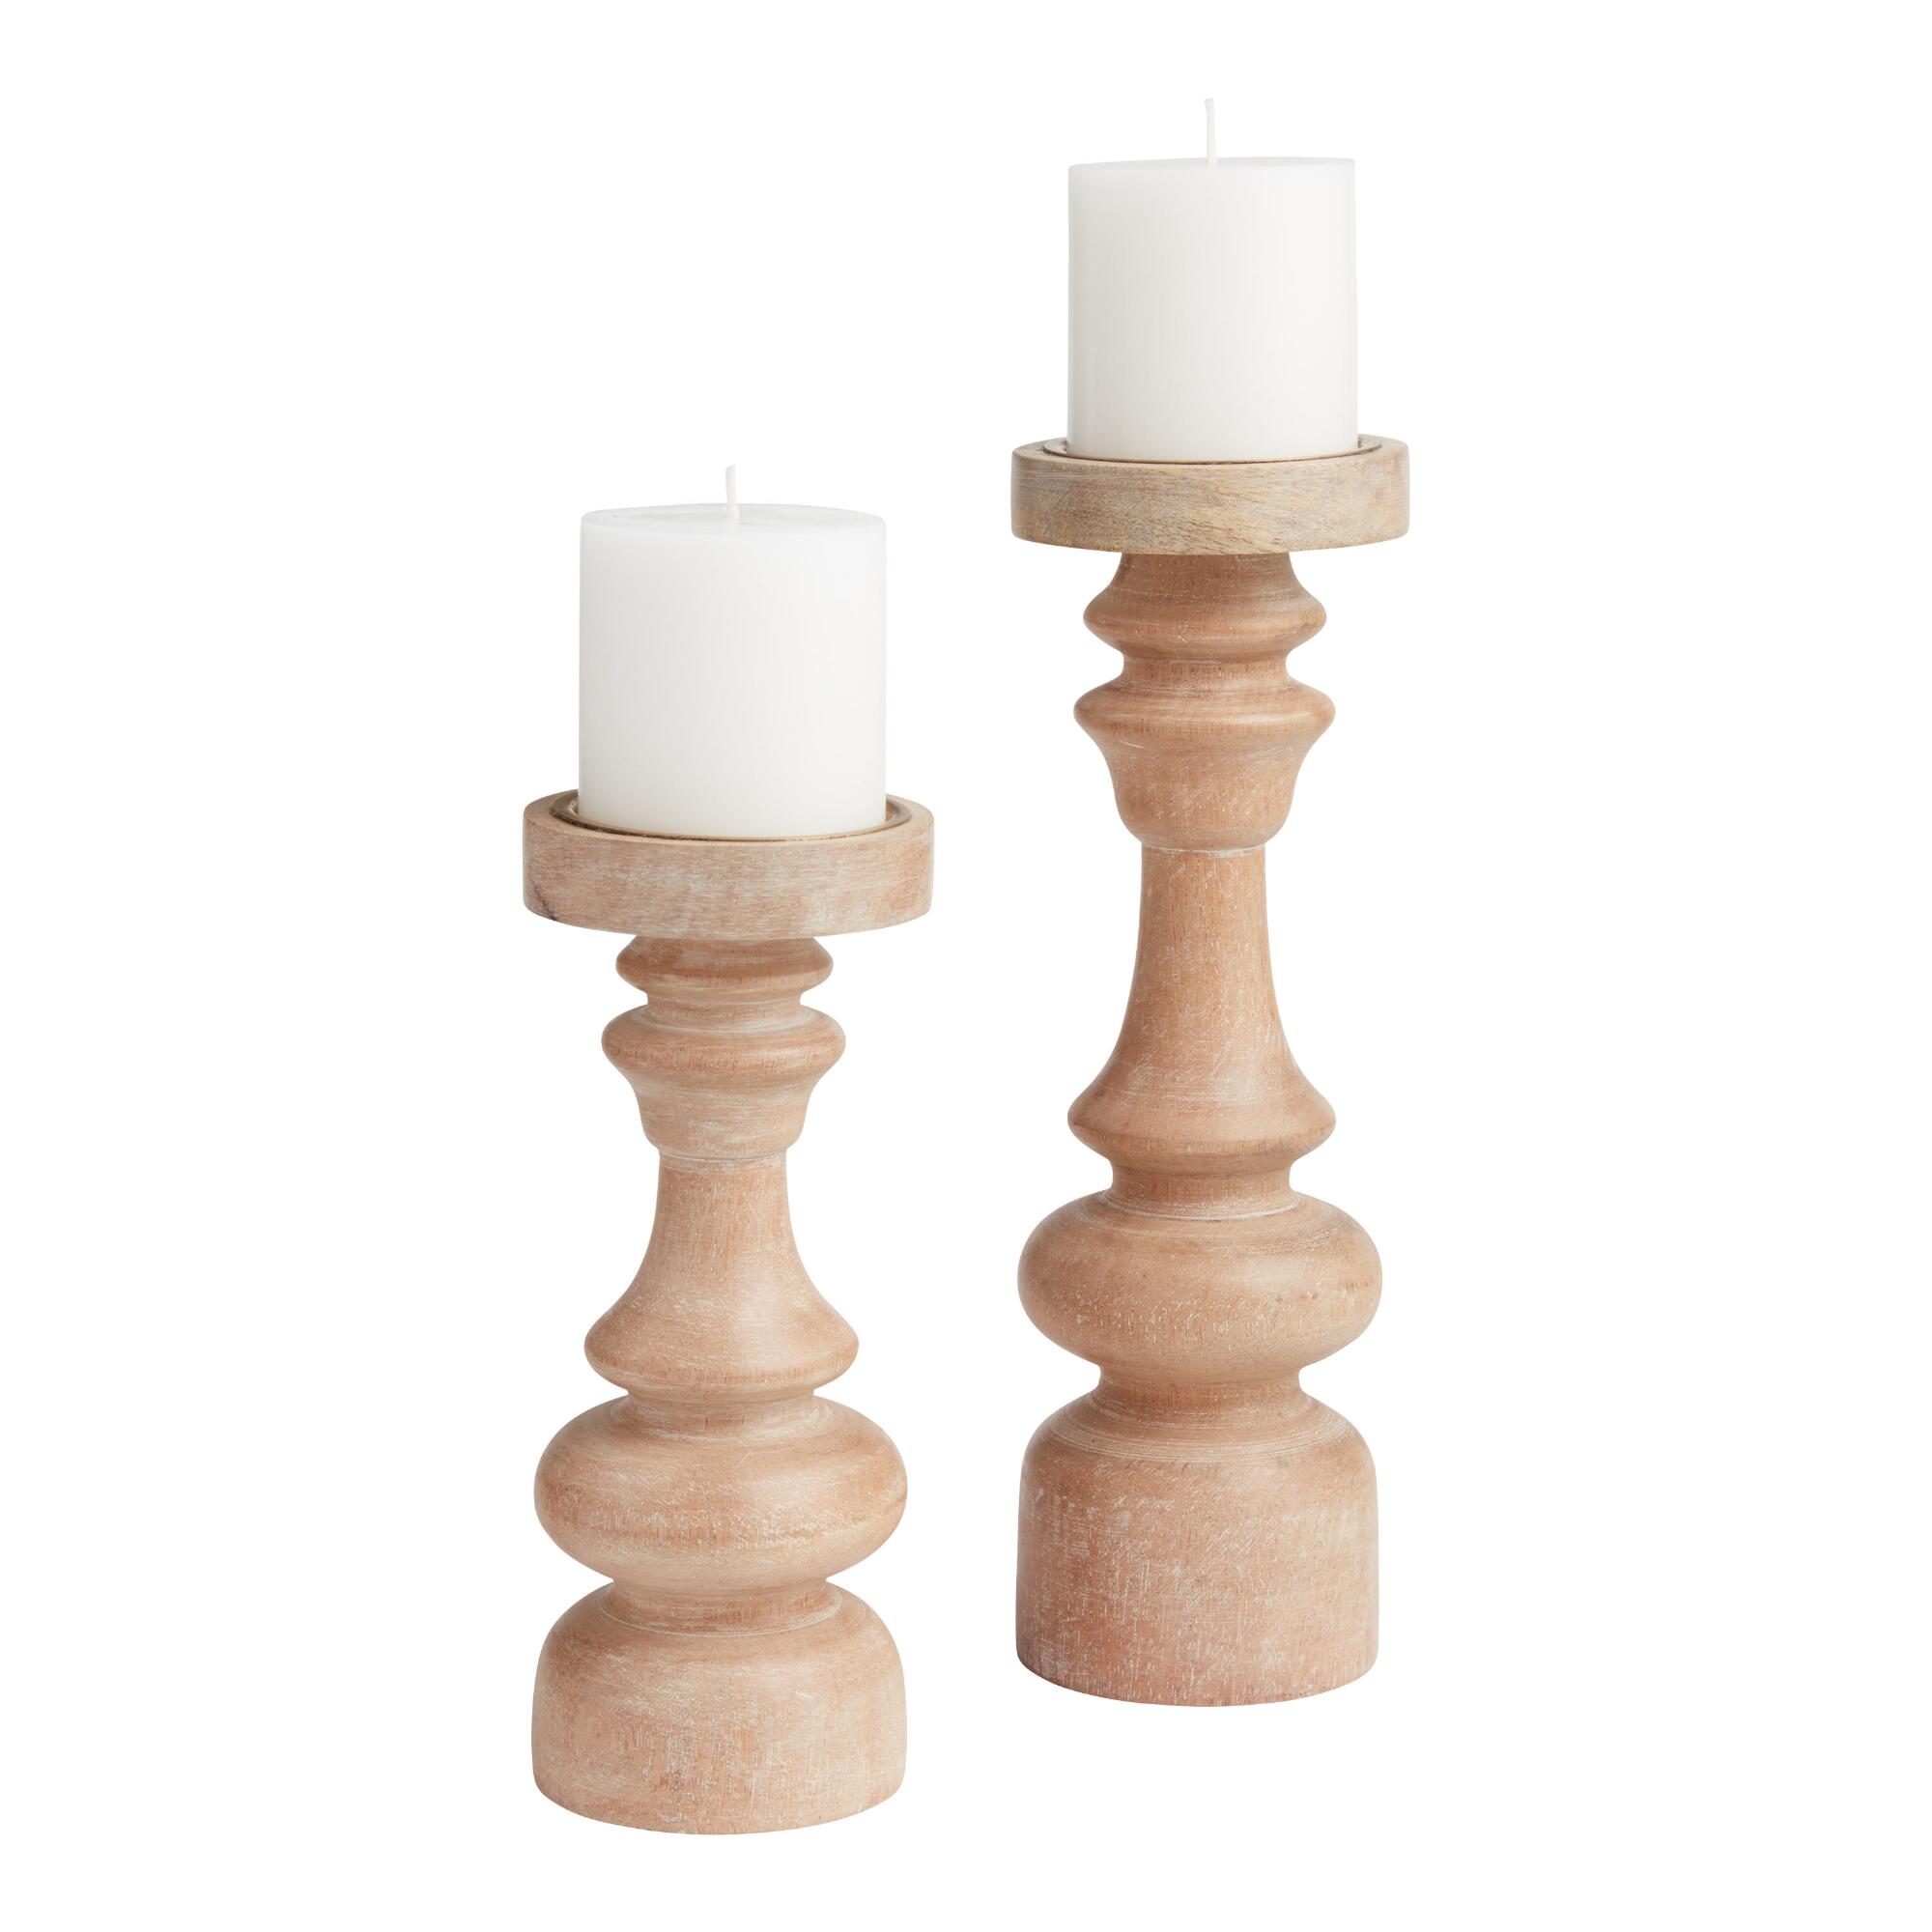 Whitewashed Wood Pillar Candle Holder by World Market